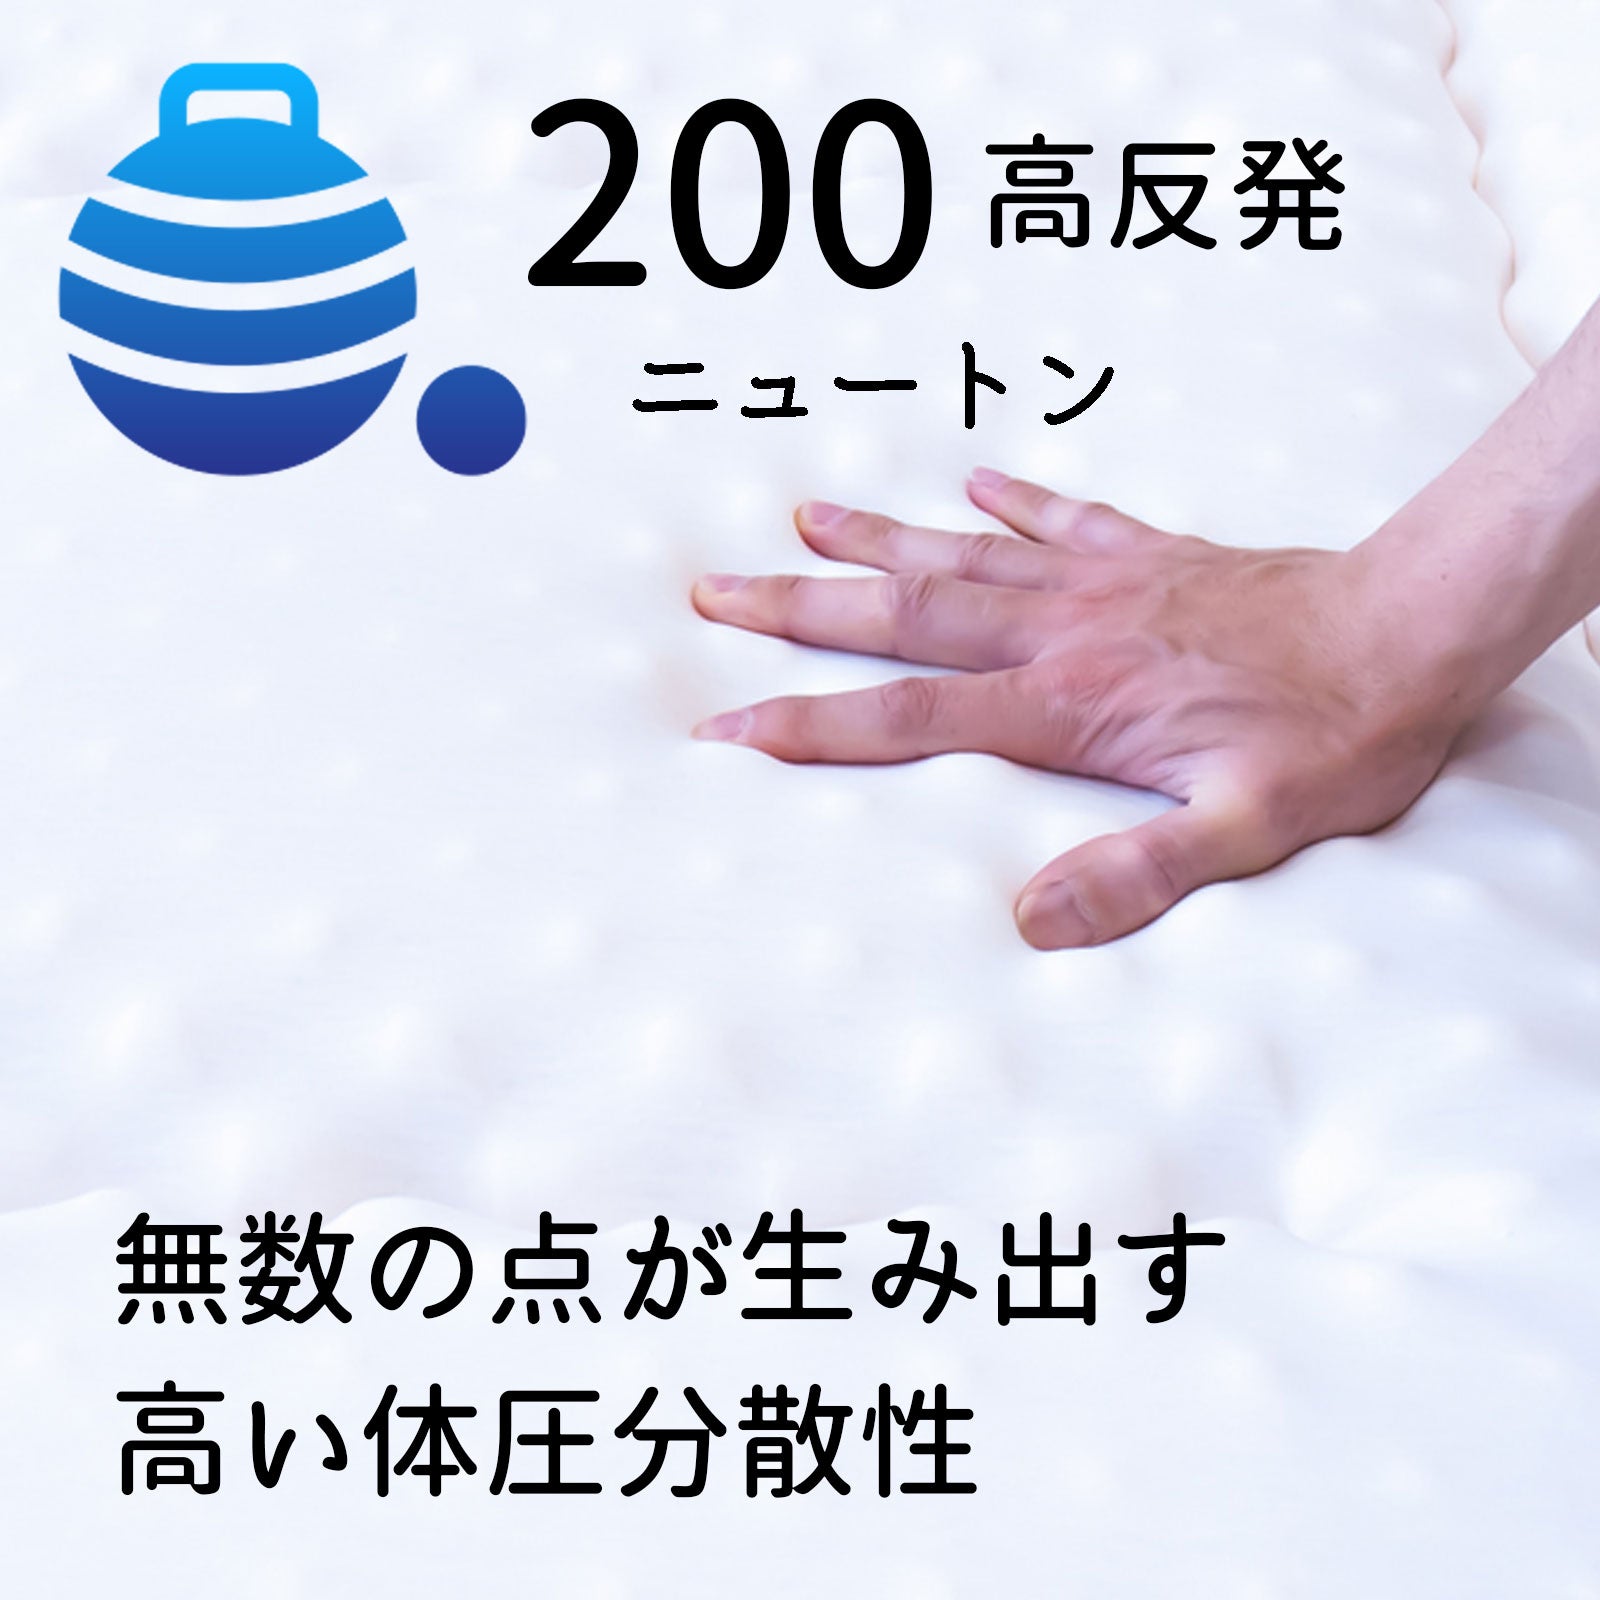 点で支える】高密凸凹ウレタンマットレス【高反発200N】 – Matsuyama